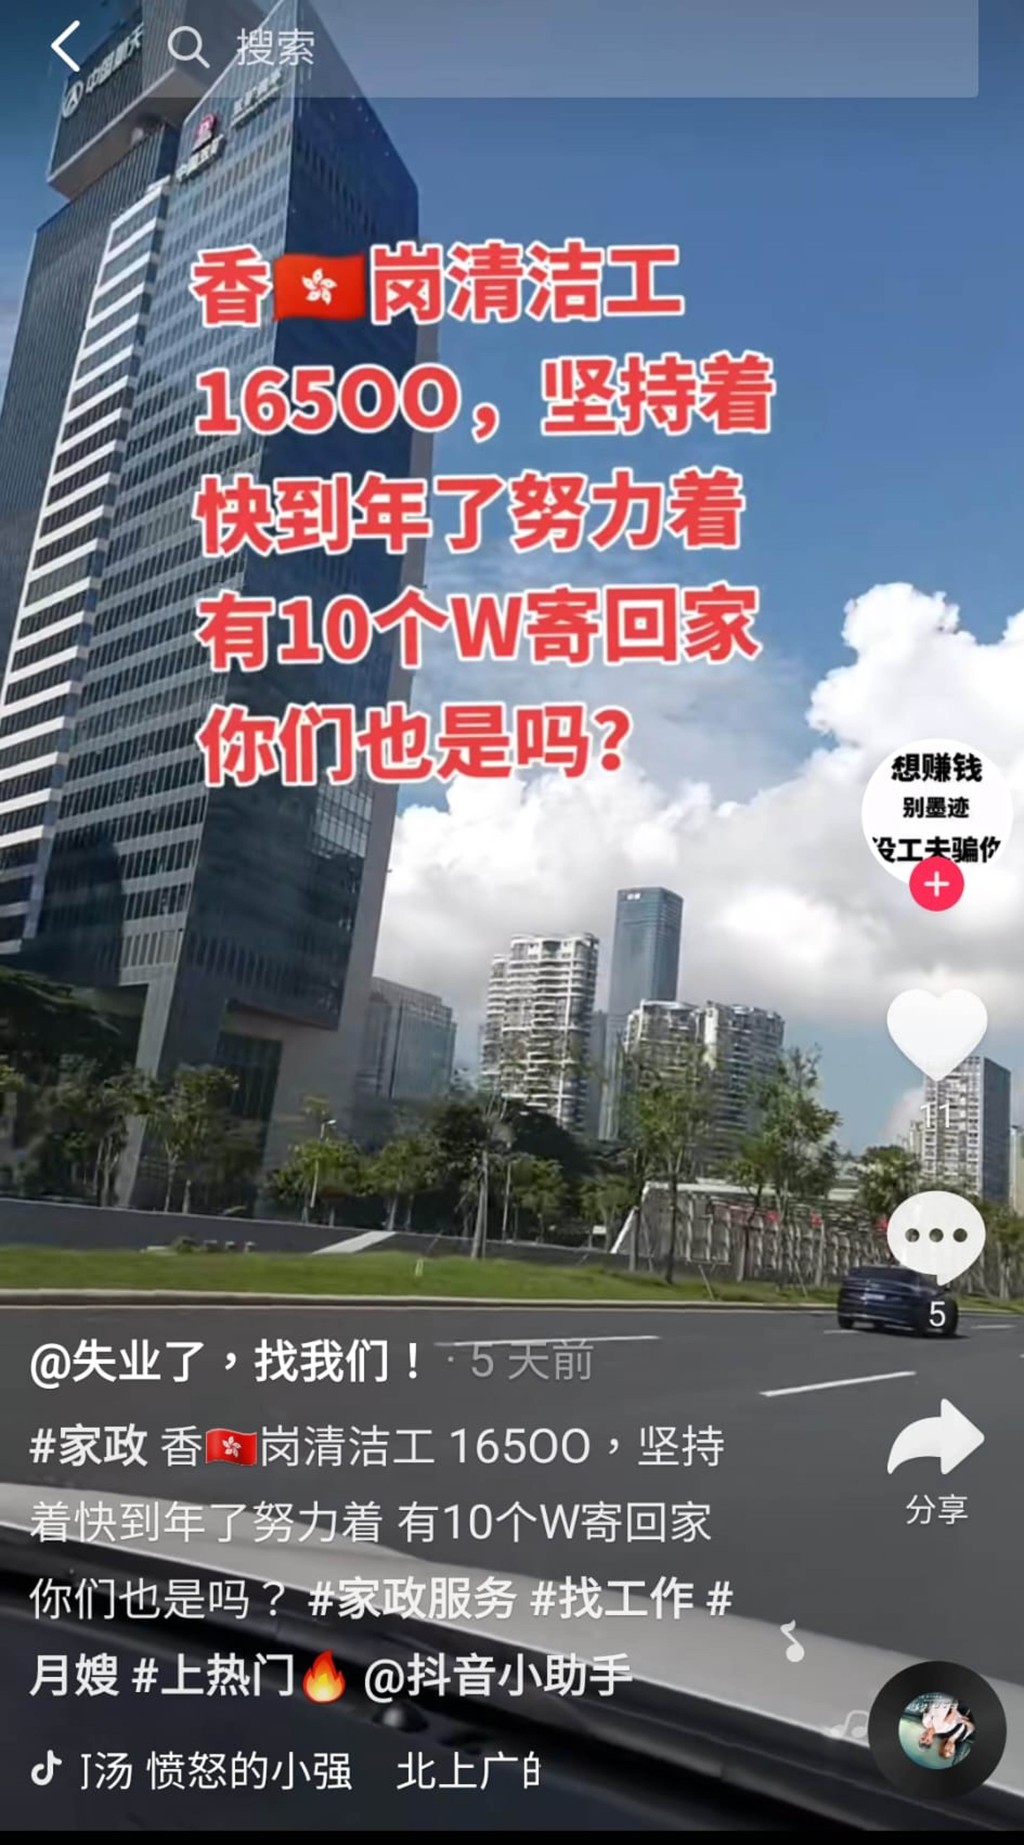 中介在「抖音」宣传，称可介绍内地人前往香港当清洁工人。